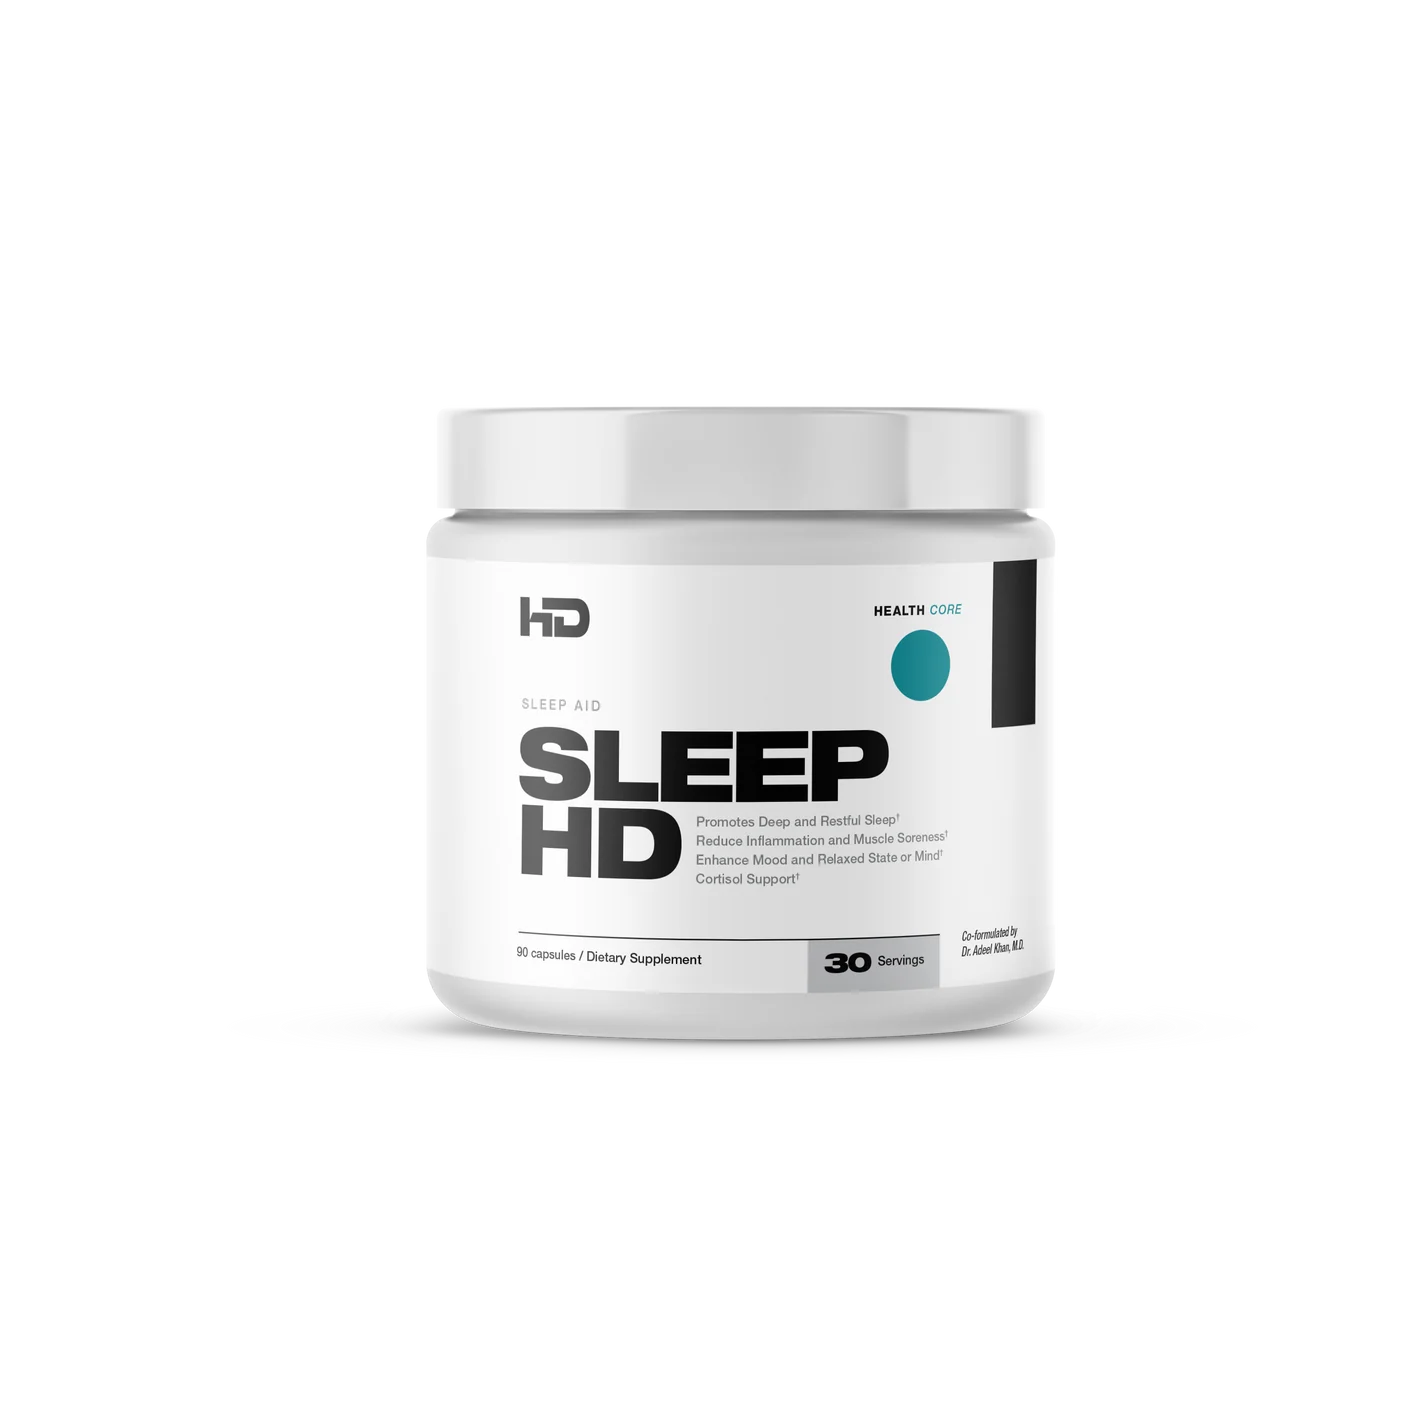 HD Muscle-SleepHD